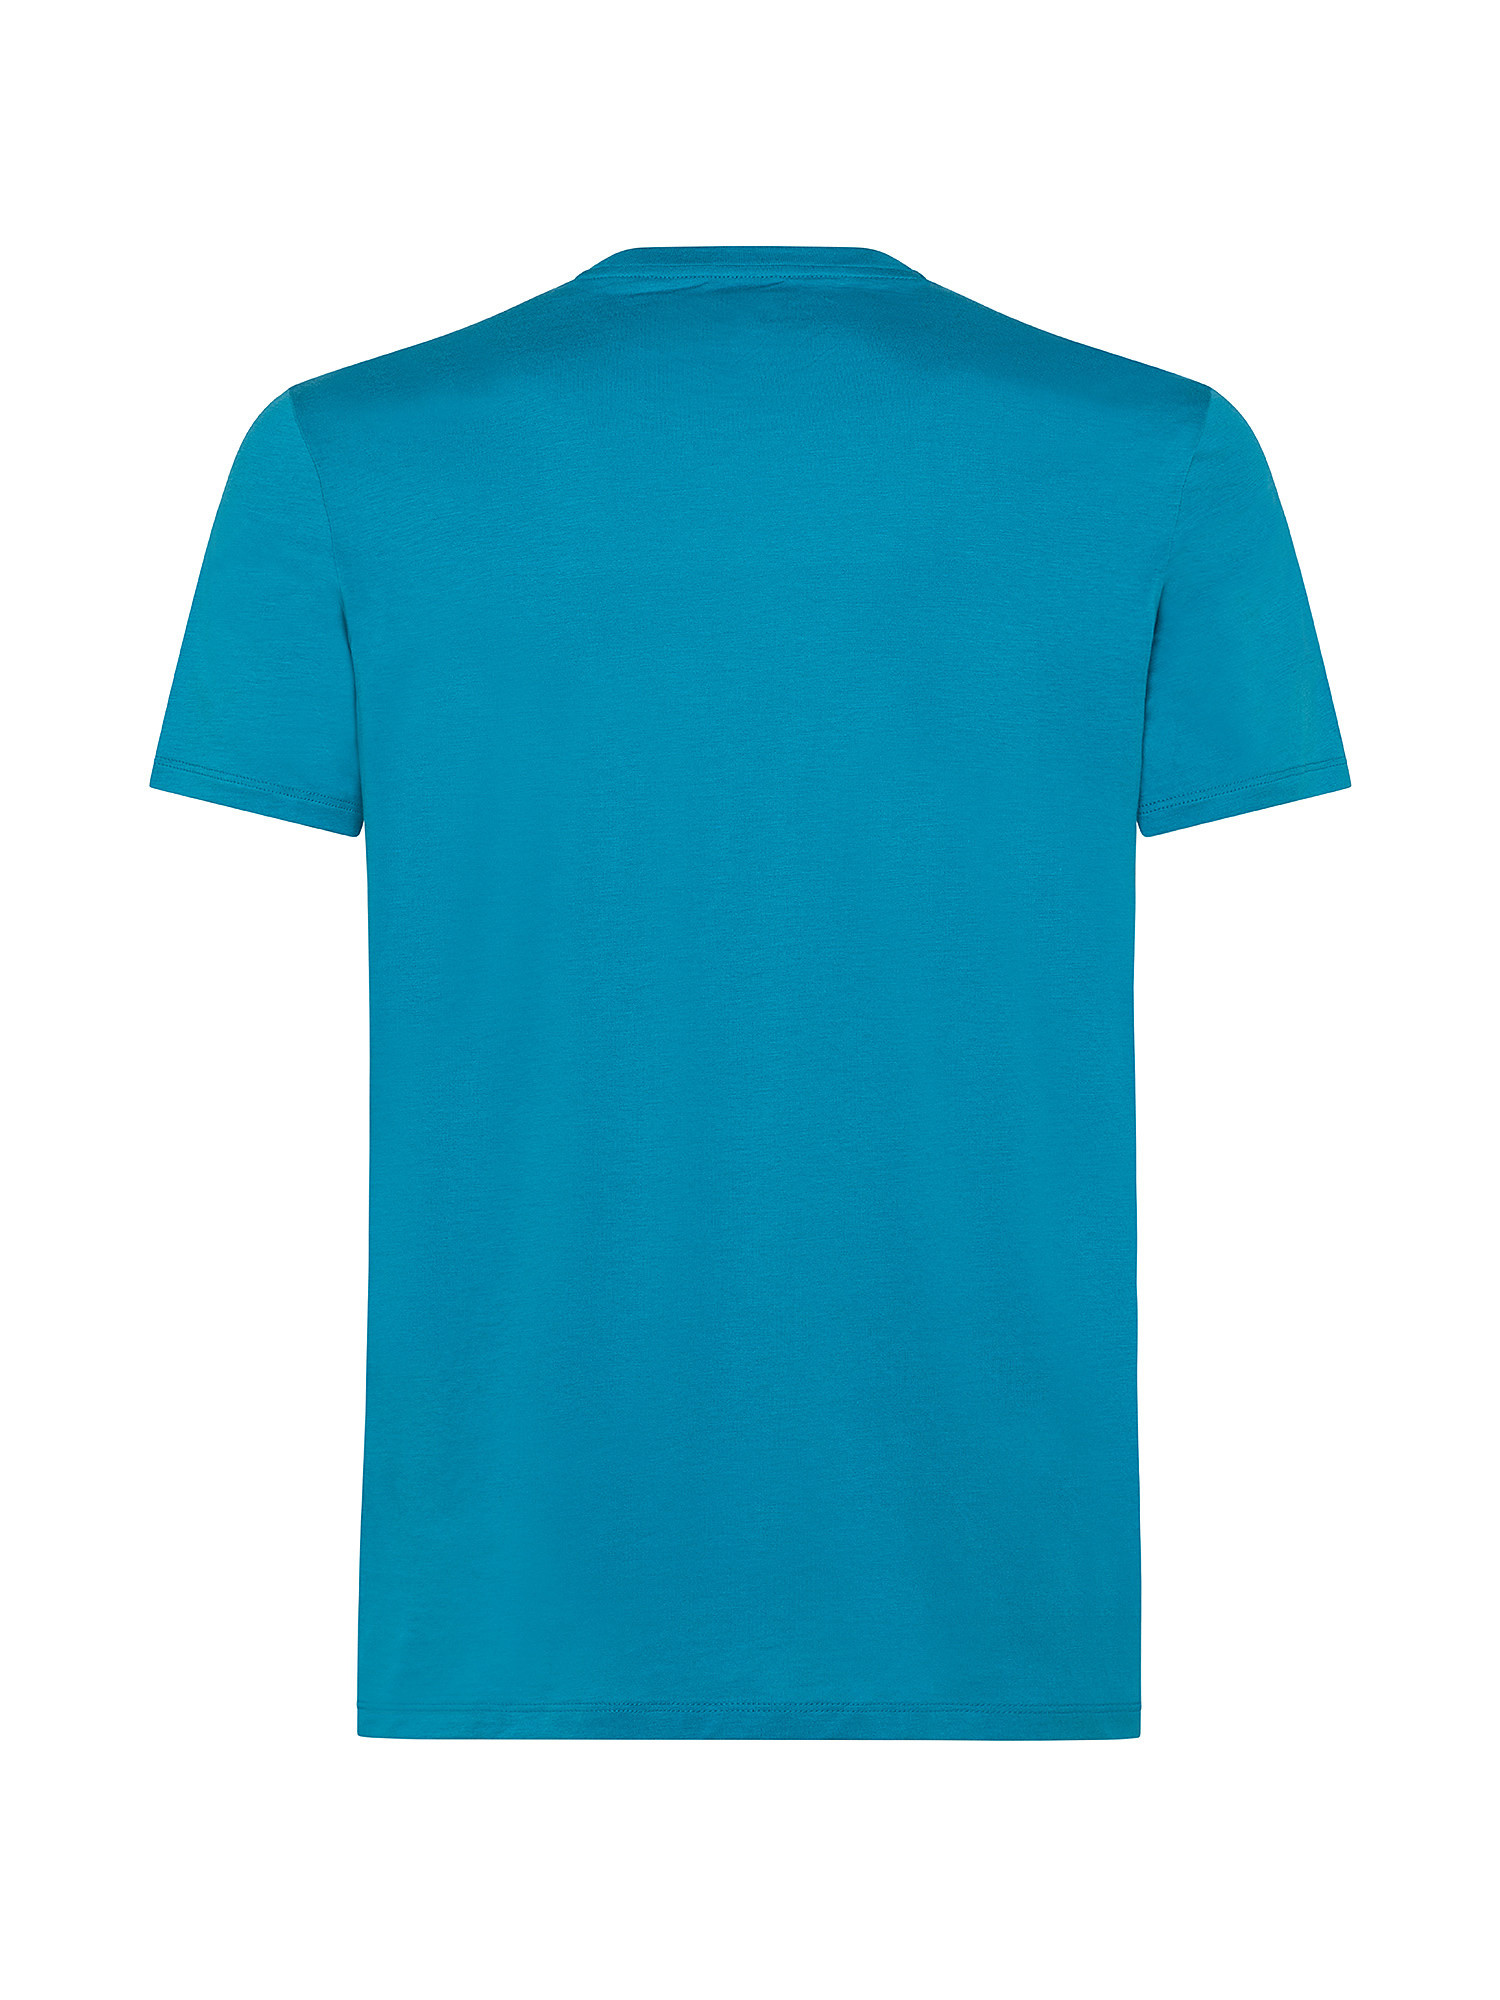 T-shirt, Azzurro turchese, large image number 1